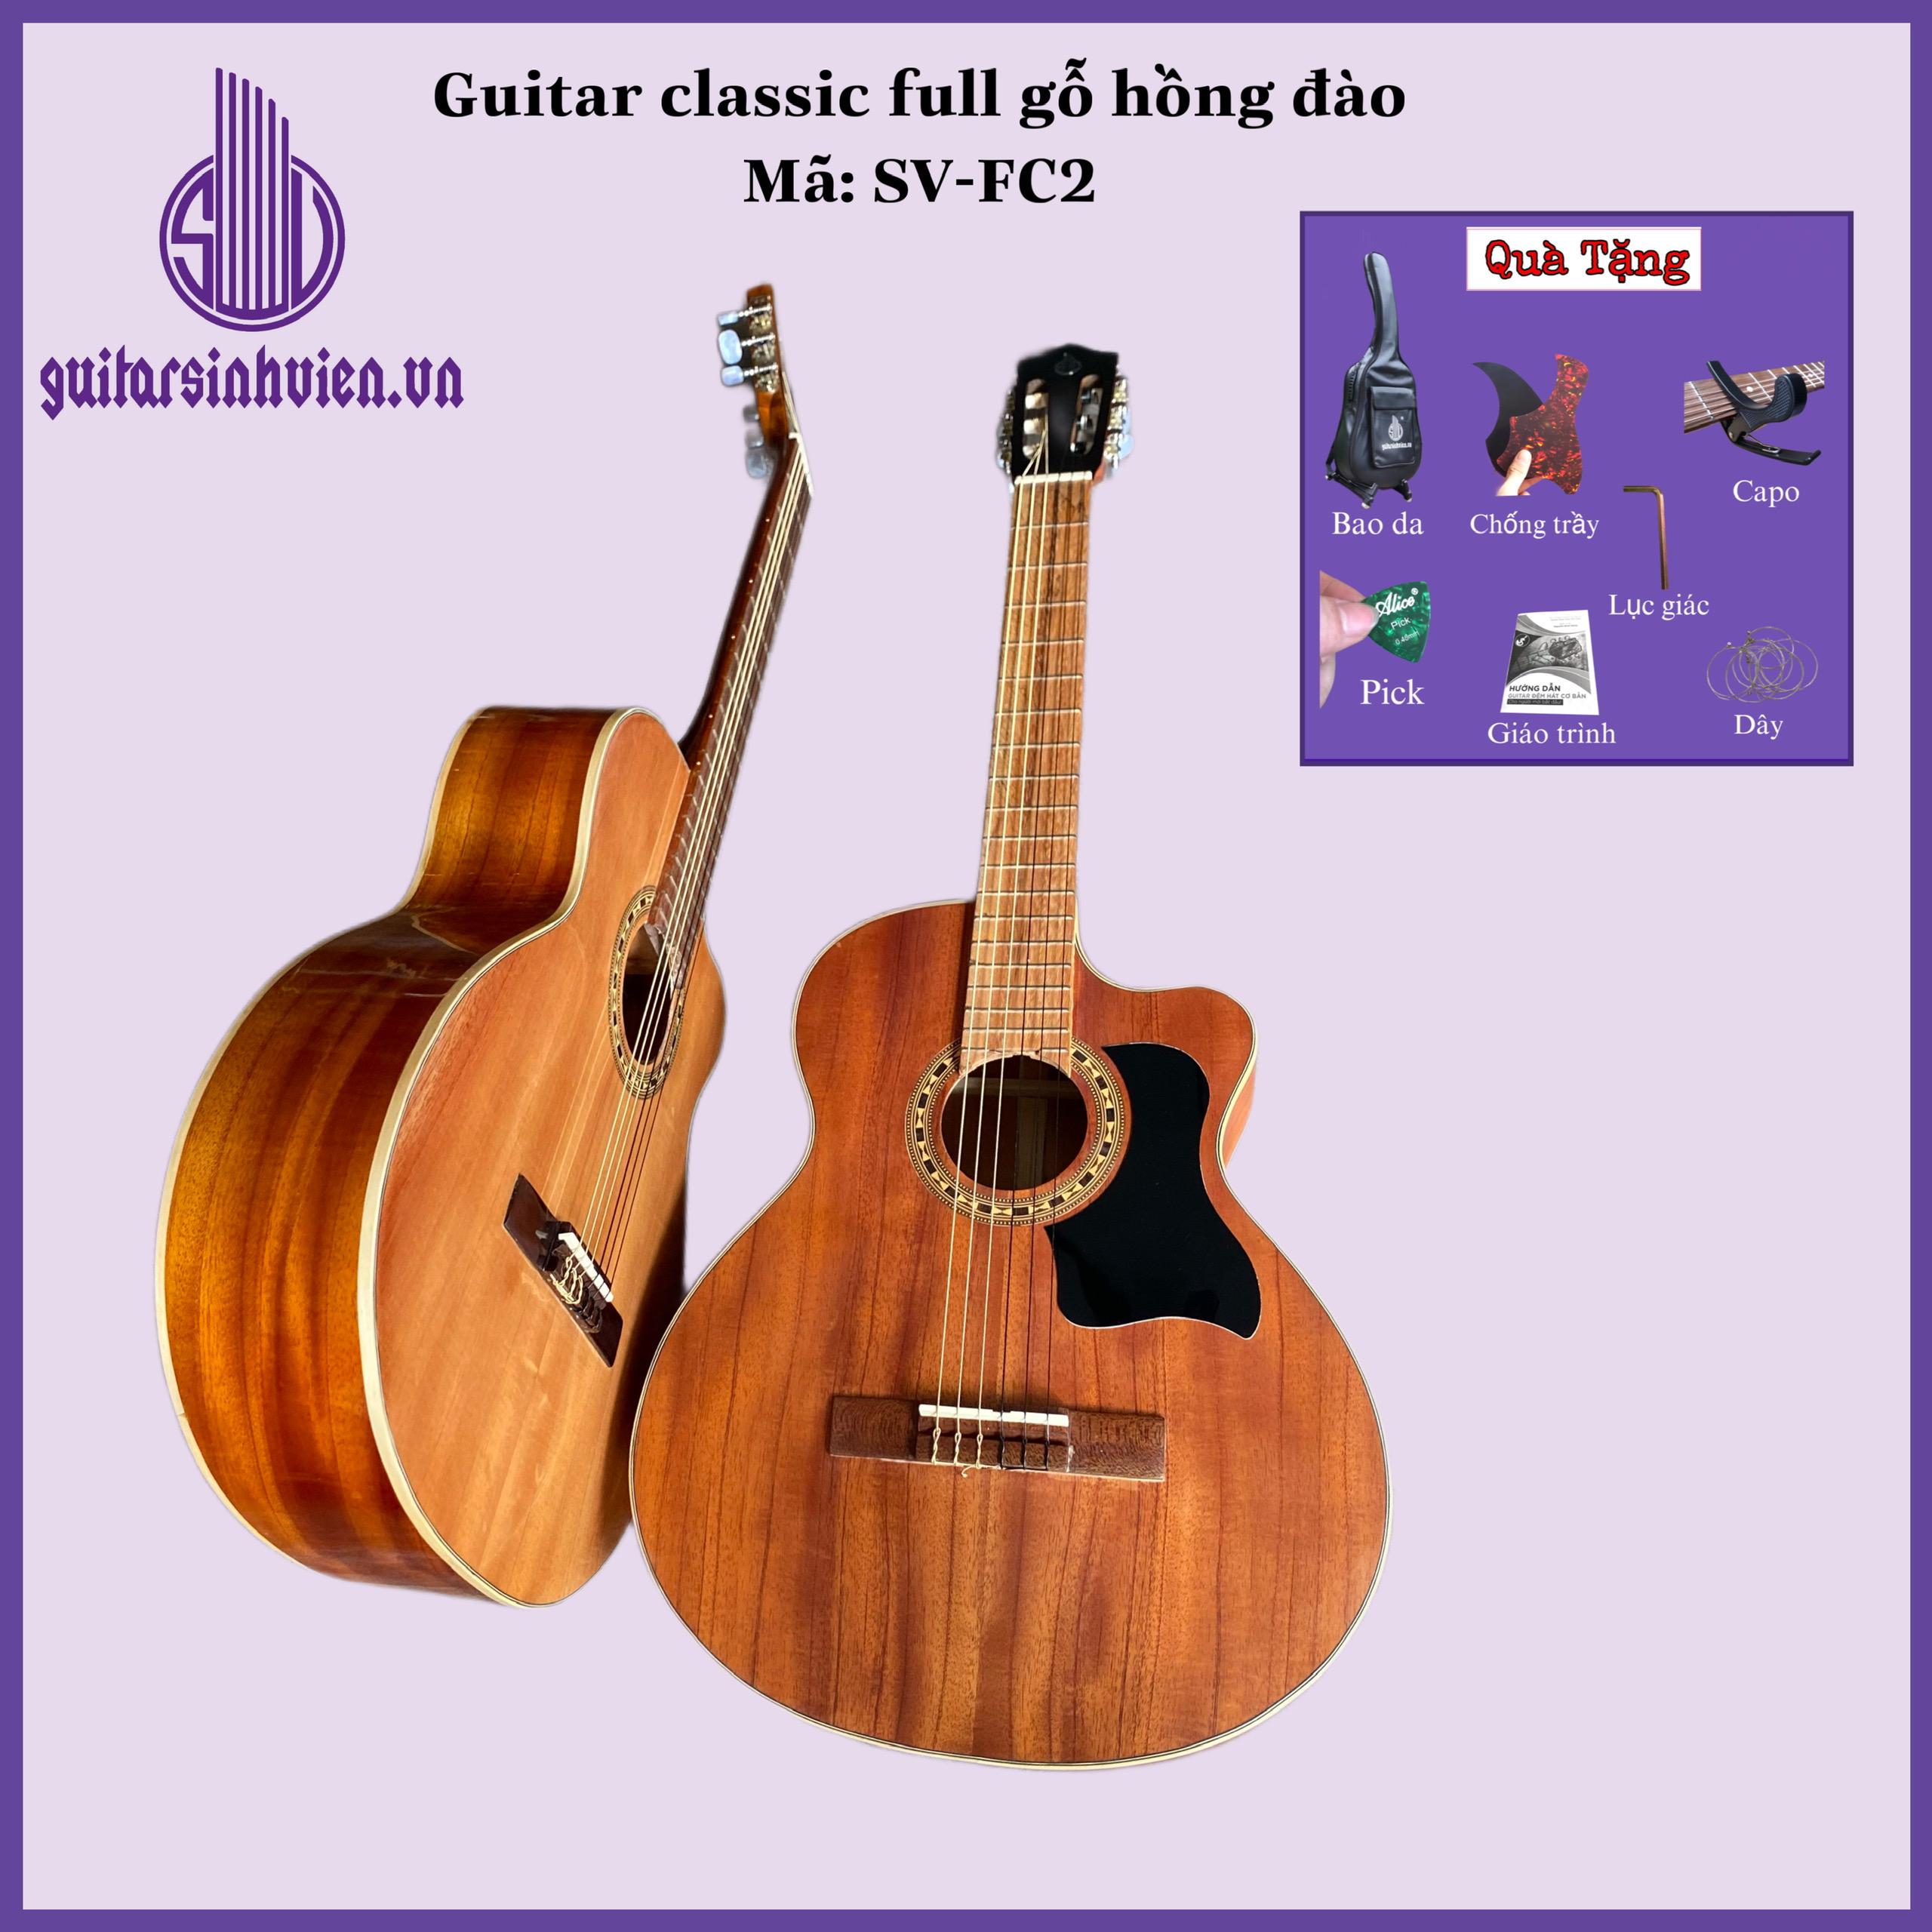 Đàn guitar classic full hồng đào dây nilong mã SV-FC2 - Tặng kèm phụ kiện - Bảo hành 1 năm